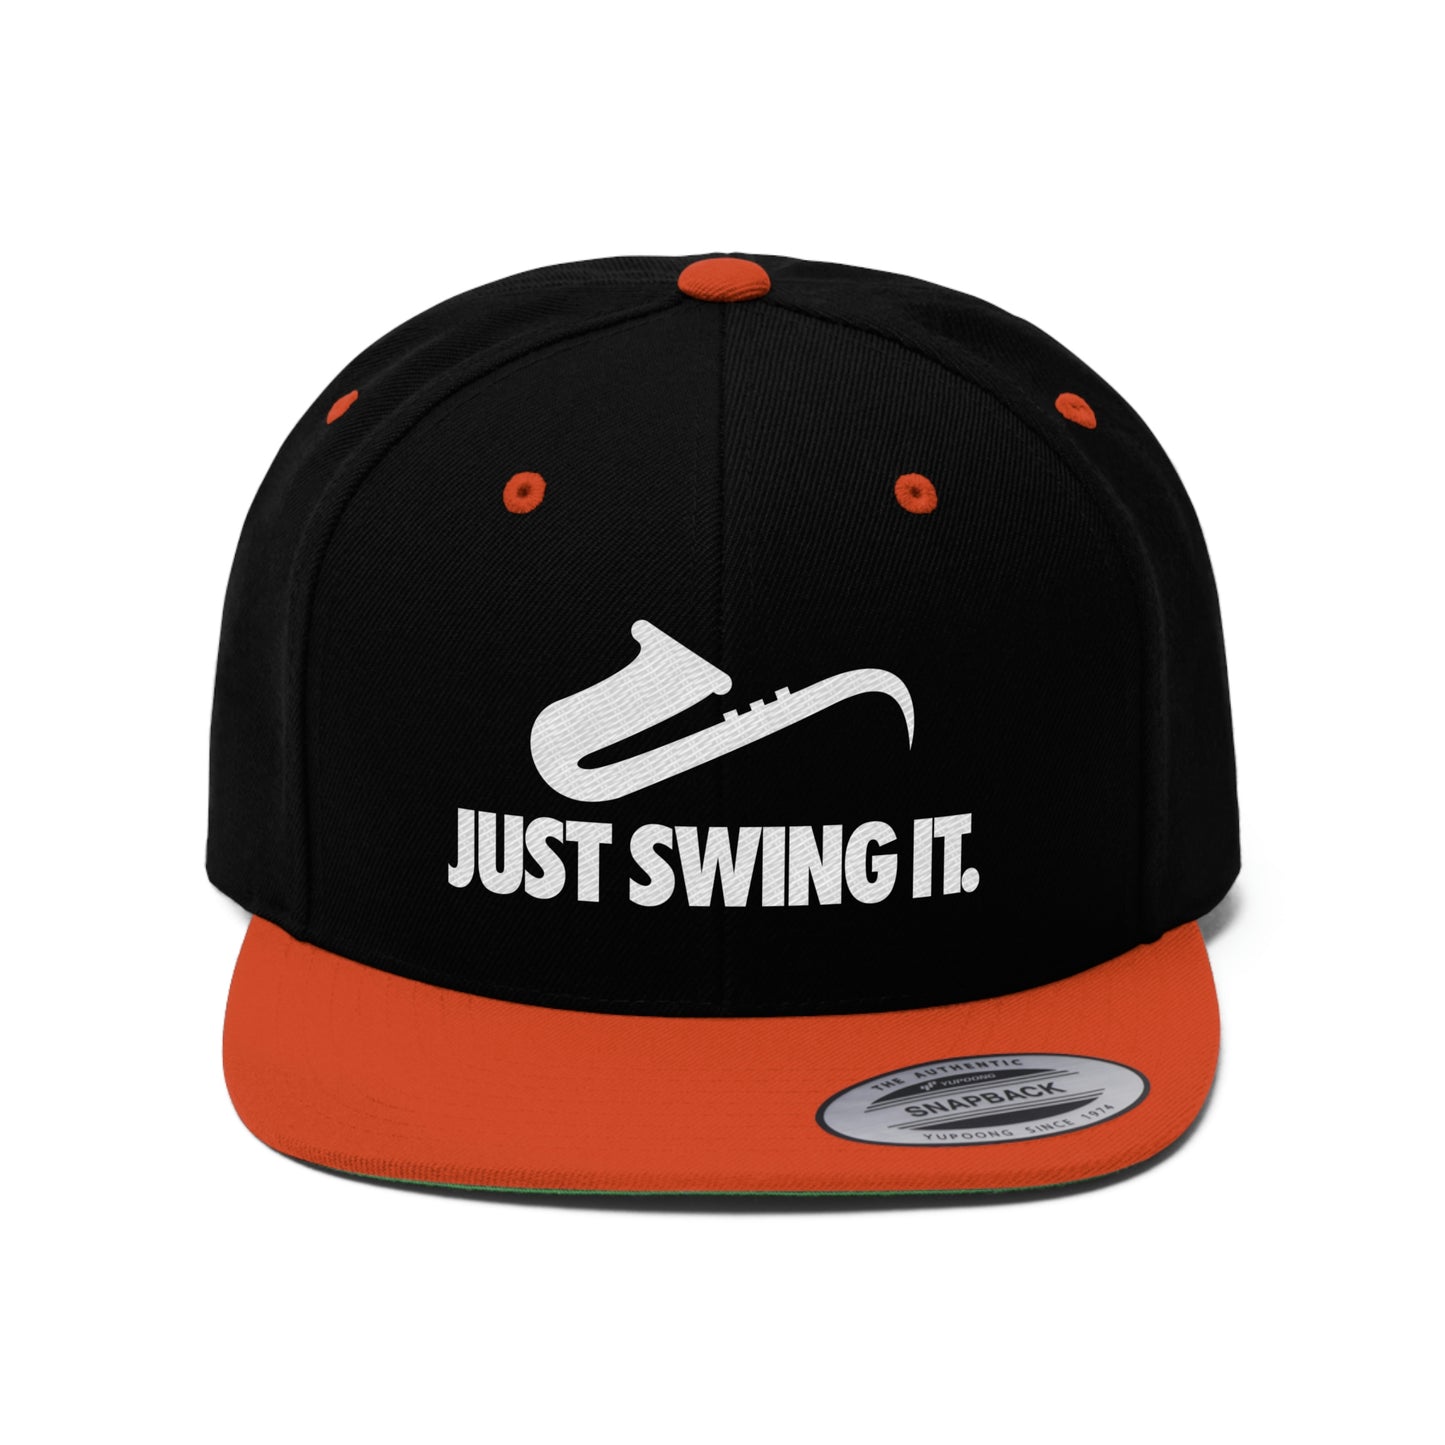 Just Swing It - Unisex Flat Bill Hat